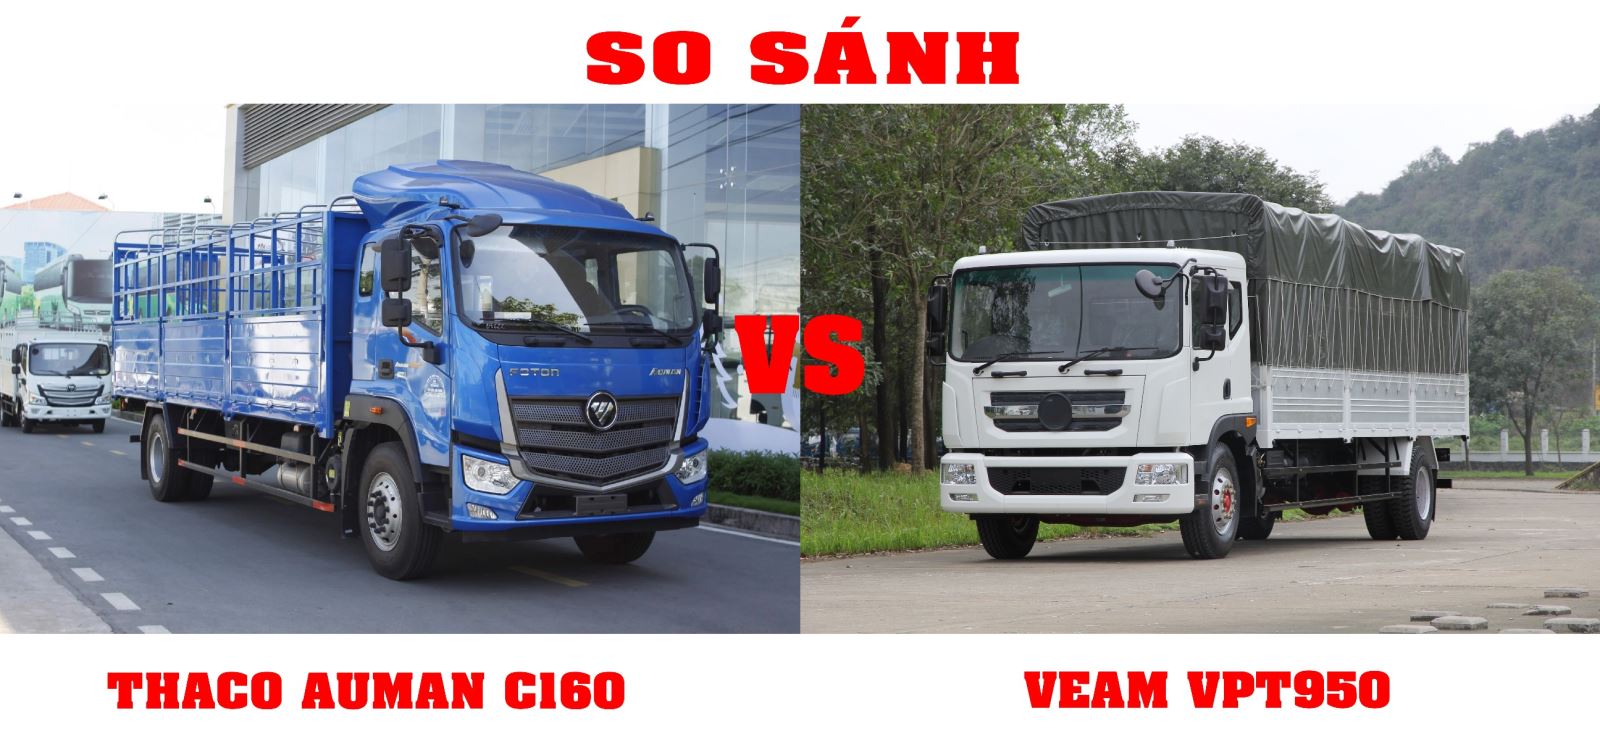 So sánh Veam VPT950 và Thaco Auman C160